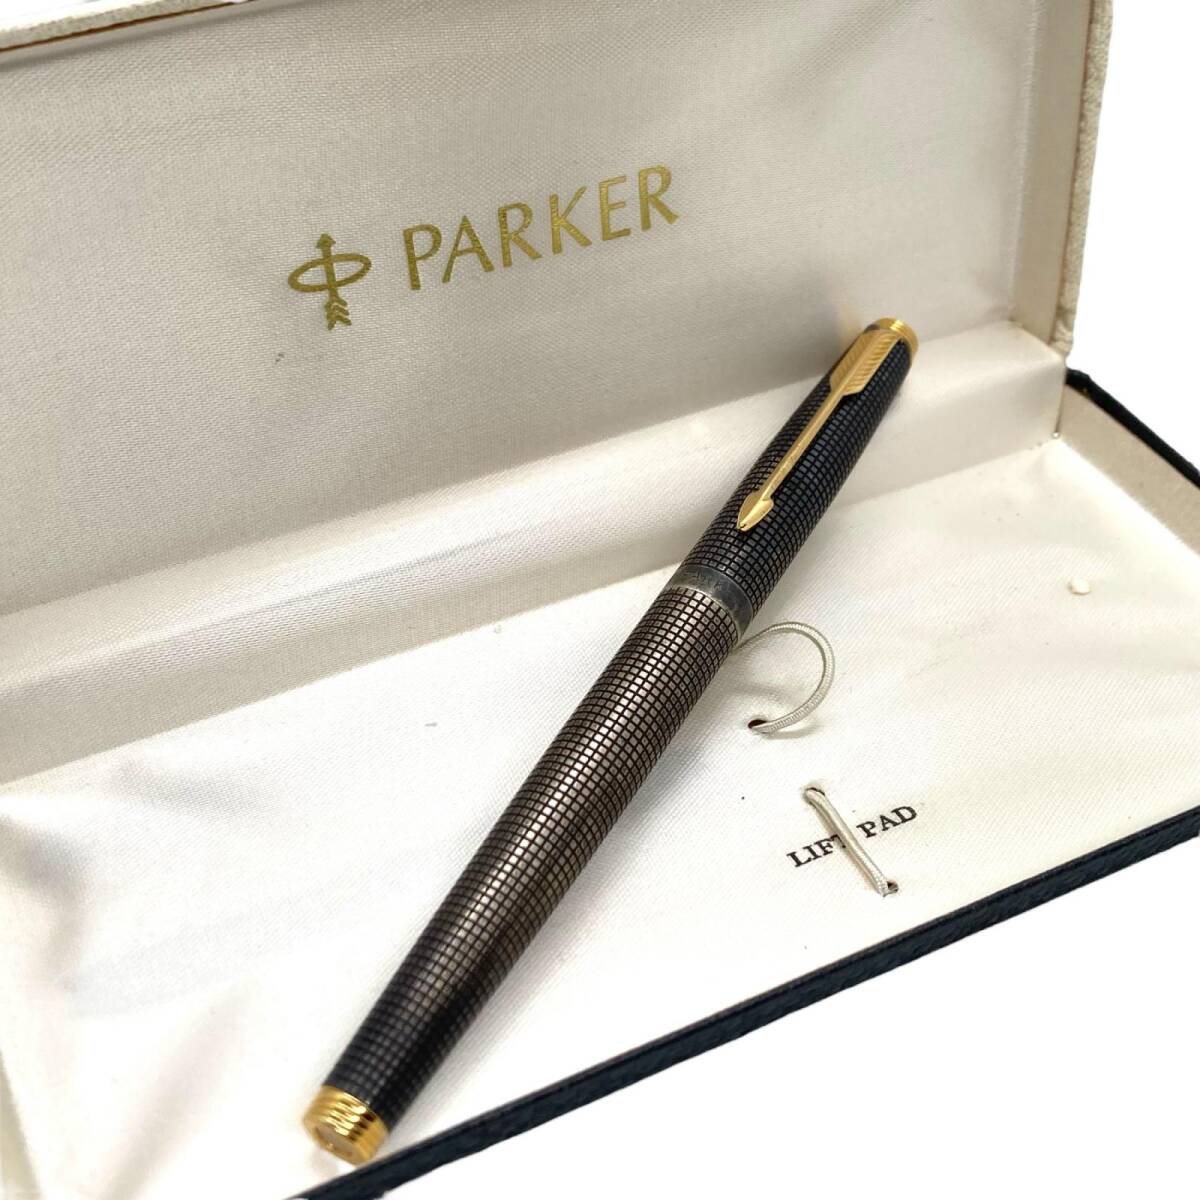  Parker fountain pen 585 pen .14K SV925 antique 